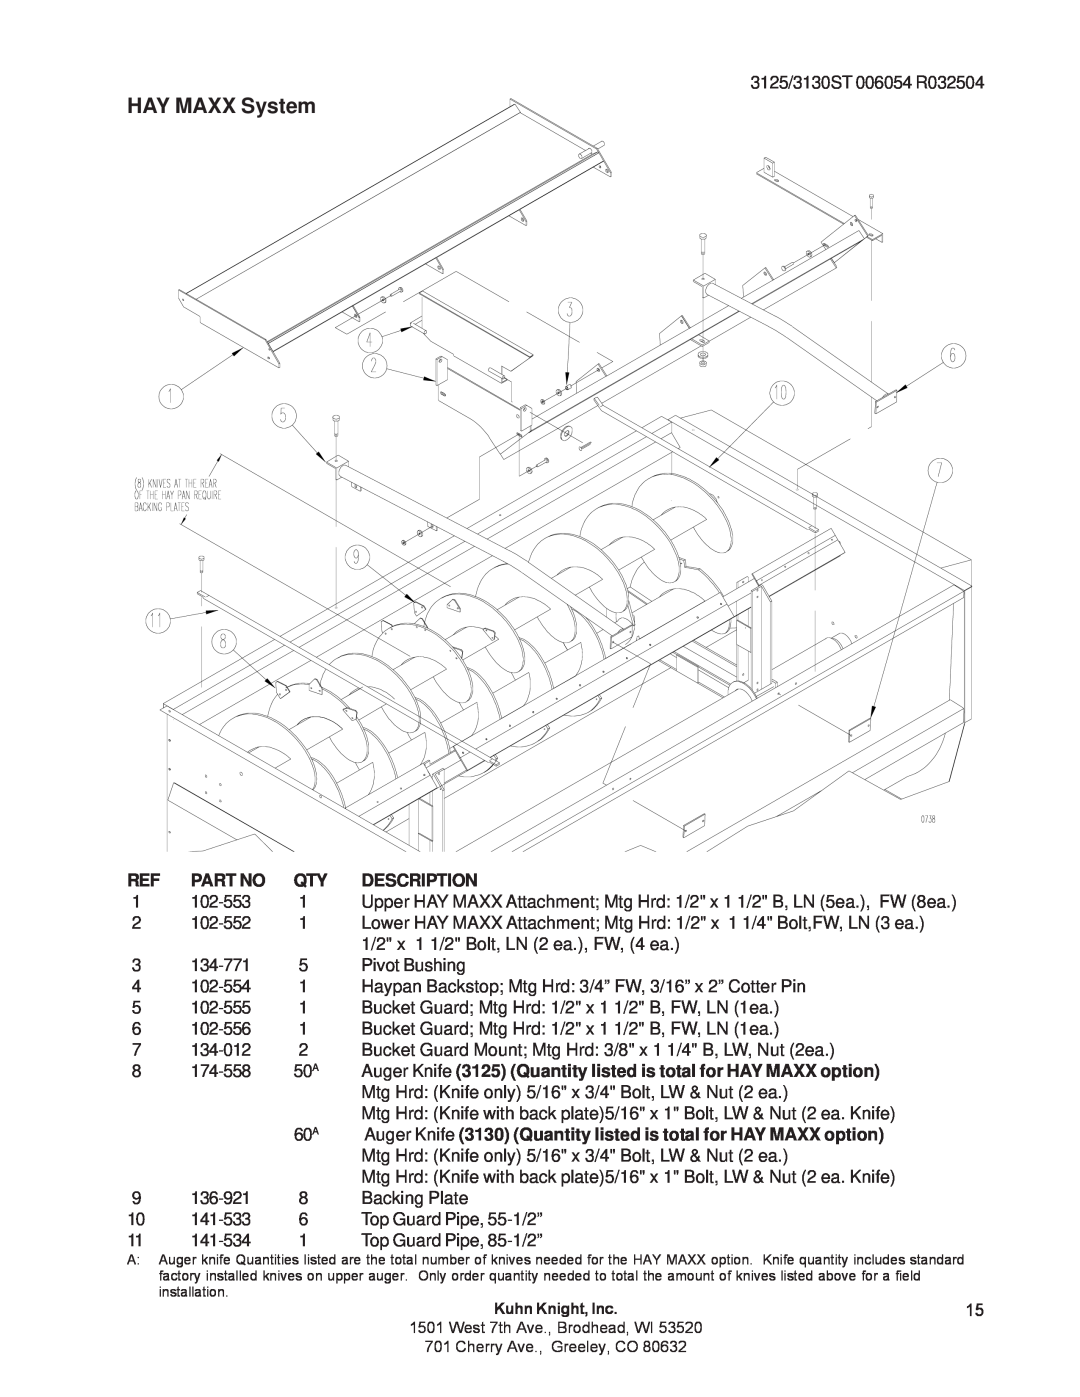 Kuhn Rikon 3125, 3130 instruction manual HAY MAXX System, Description 